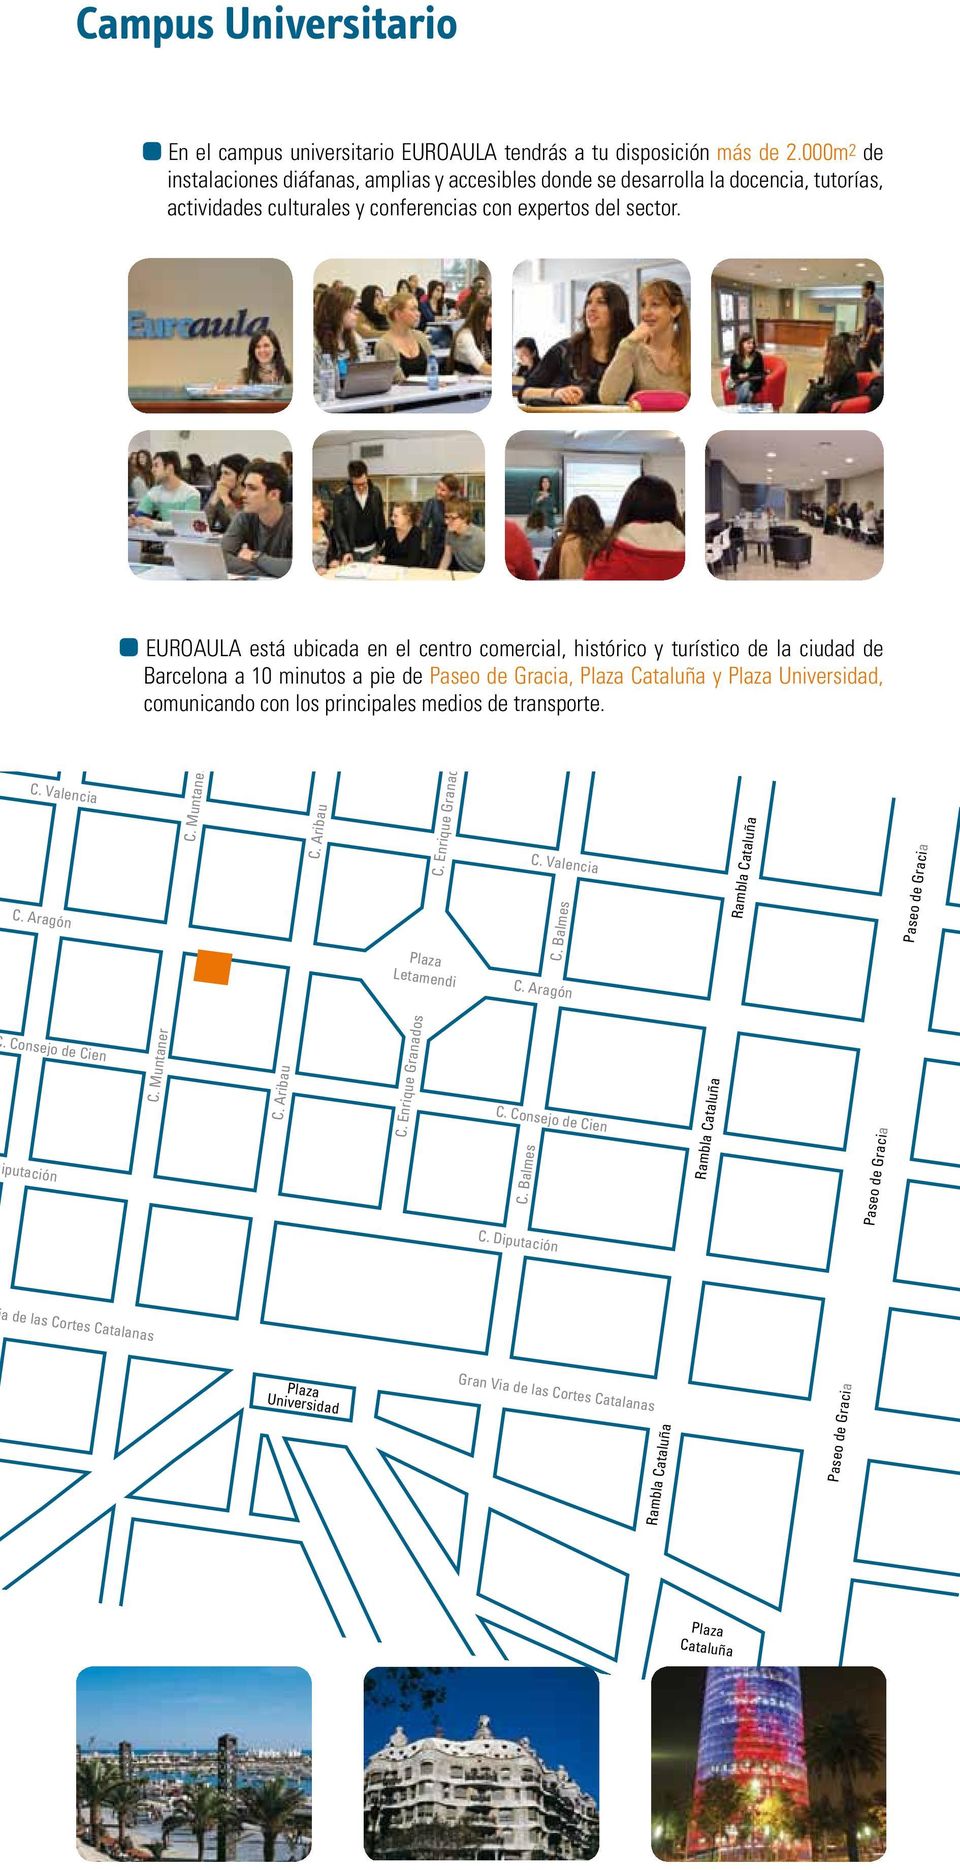 EUROAULA está ubicada en el centro comercial, histórico y turístico de la ciudad de Barcelona a 10 minutos a pie de Paseo de Gracia, Plaza Cataluña y Plaza Universidad, comunicando con los